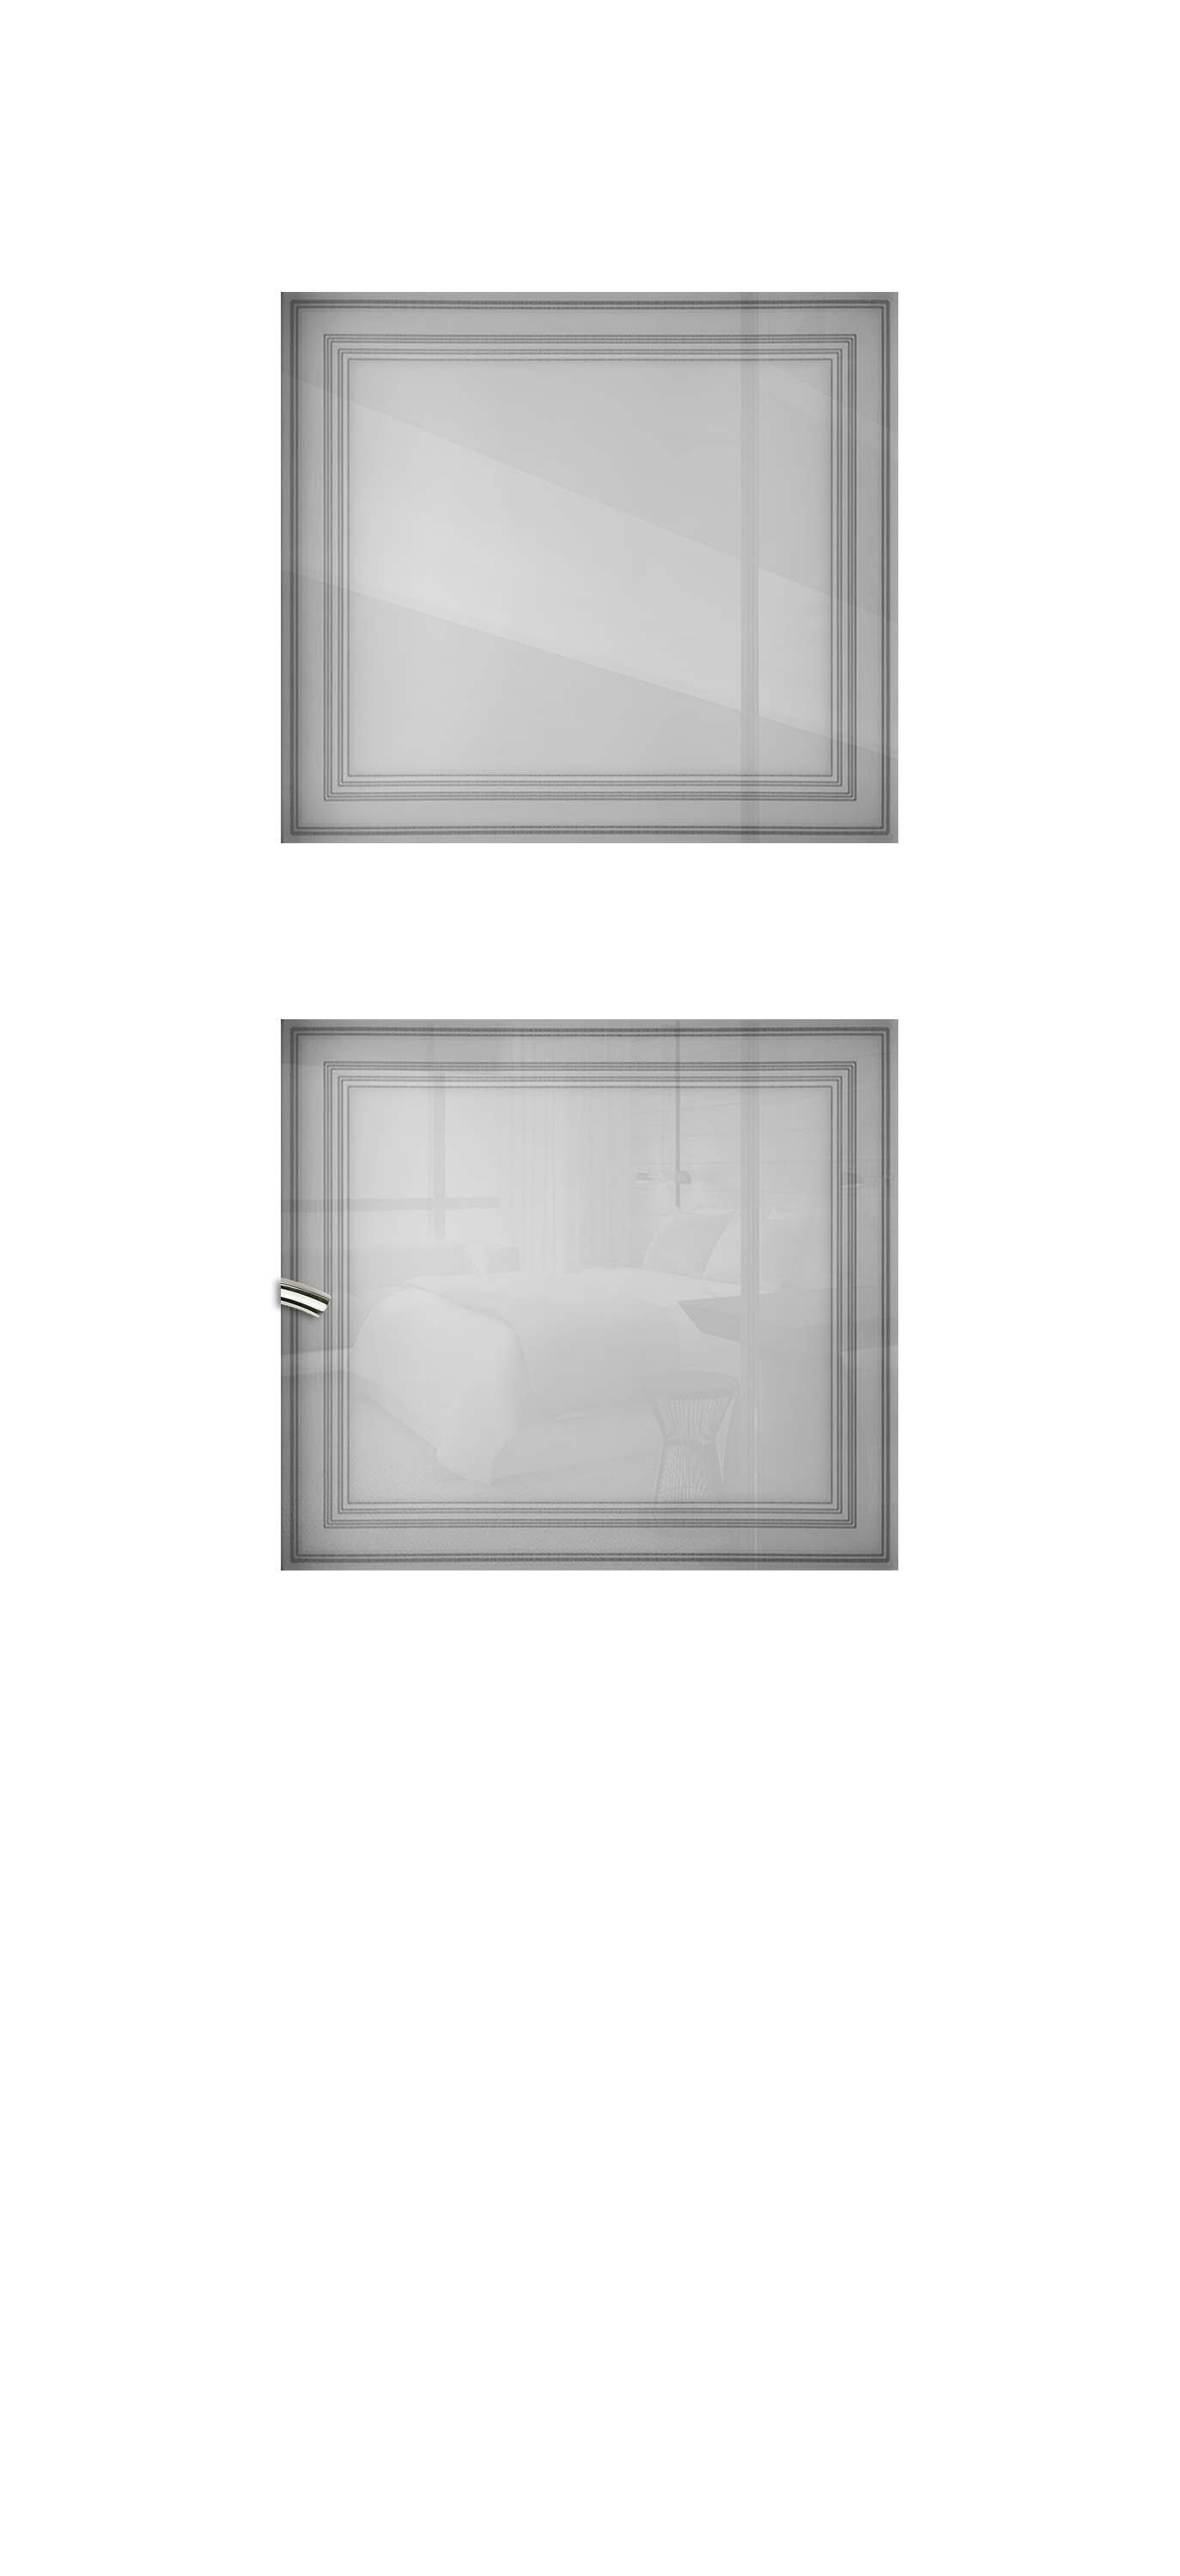 Межкомнатная дверь «Vision 3». Вид отделки Белая эмаль Остекление:  Cтандартный наличник